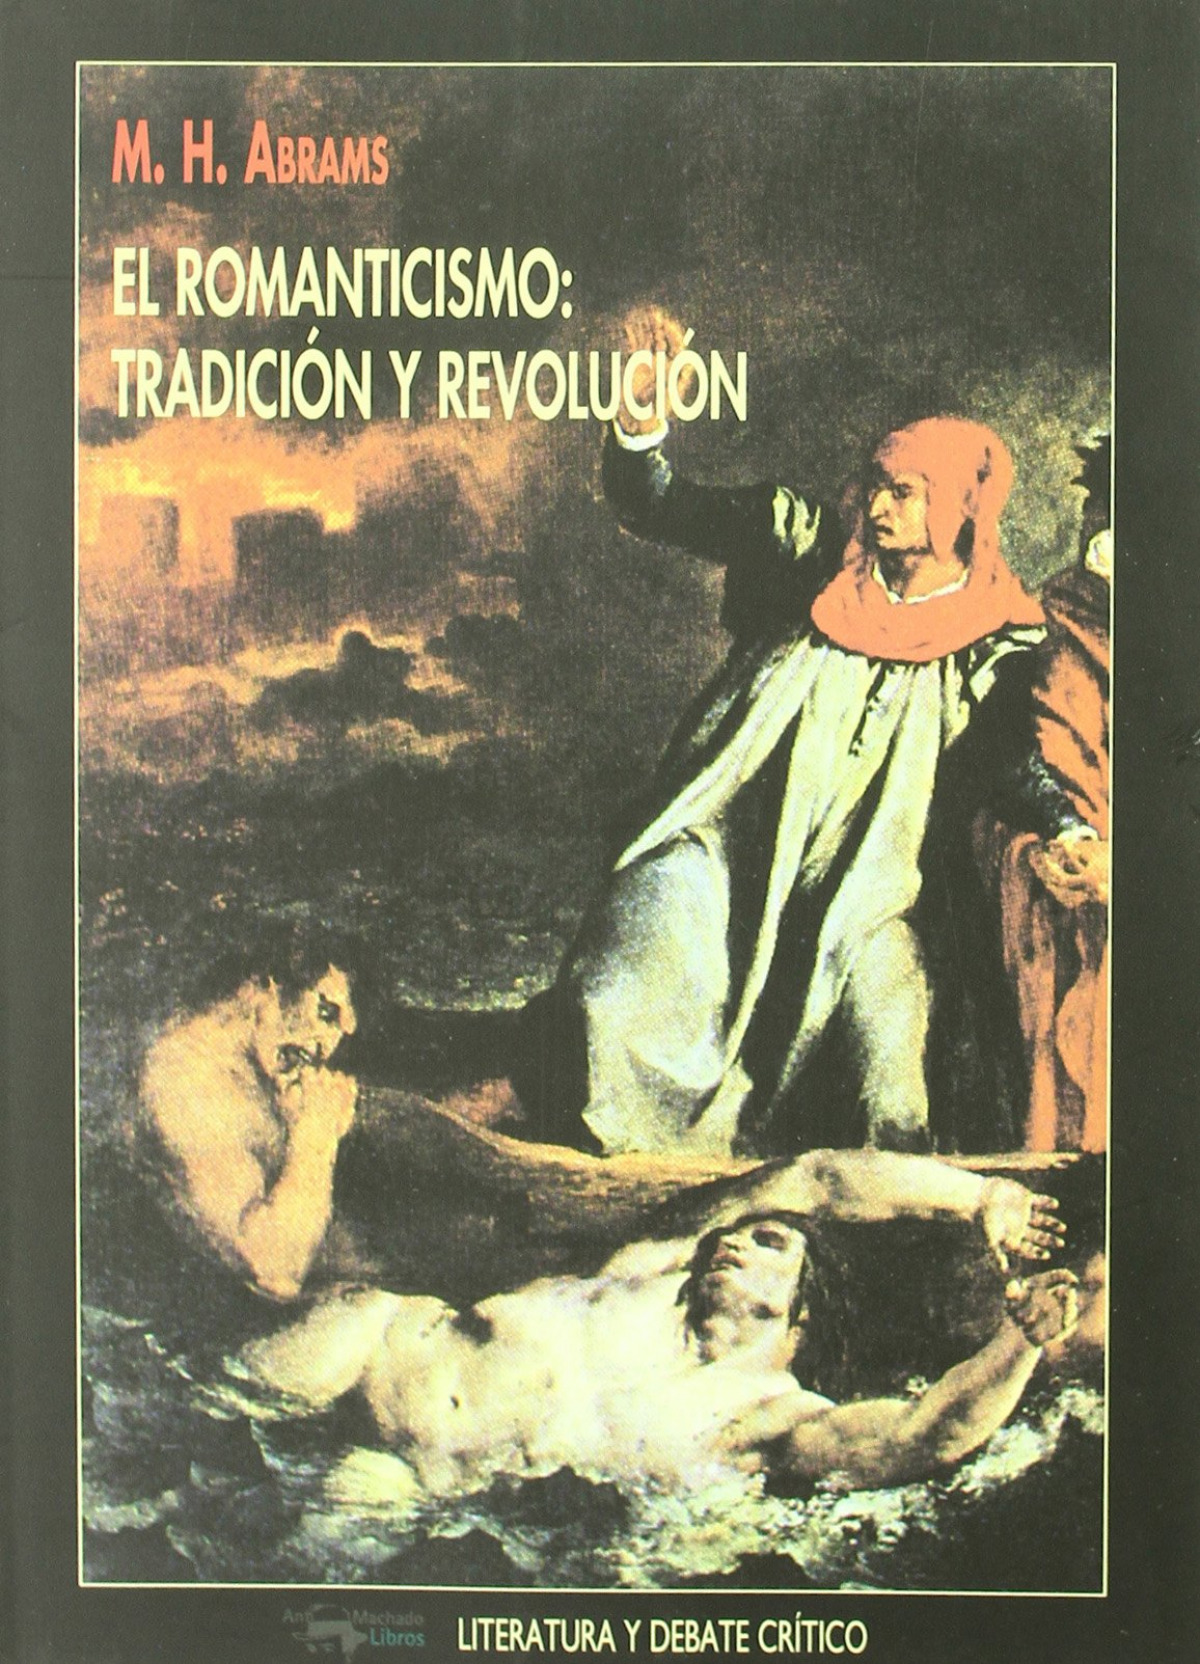 Romanticismo, el:tradicion y revolucion - Abrams, M.H.